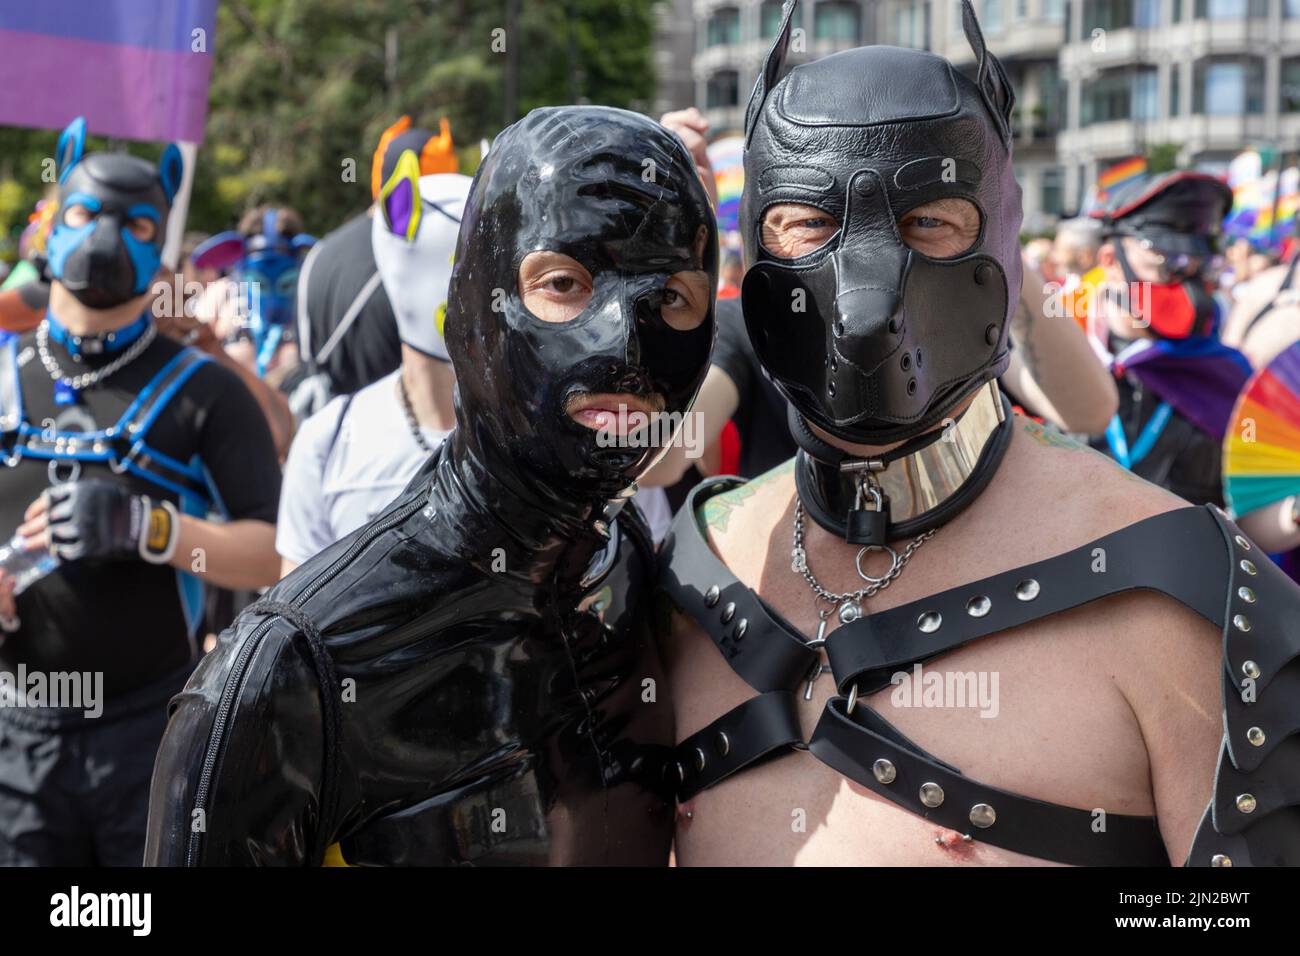 Los hombres se visten con trajes de cuero bondage como parte de London Pride, en Piccadilly. La marcha anual es una celebración para lesbianas, gays, bisexuales, tr Foto de stock